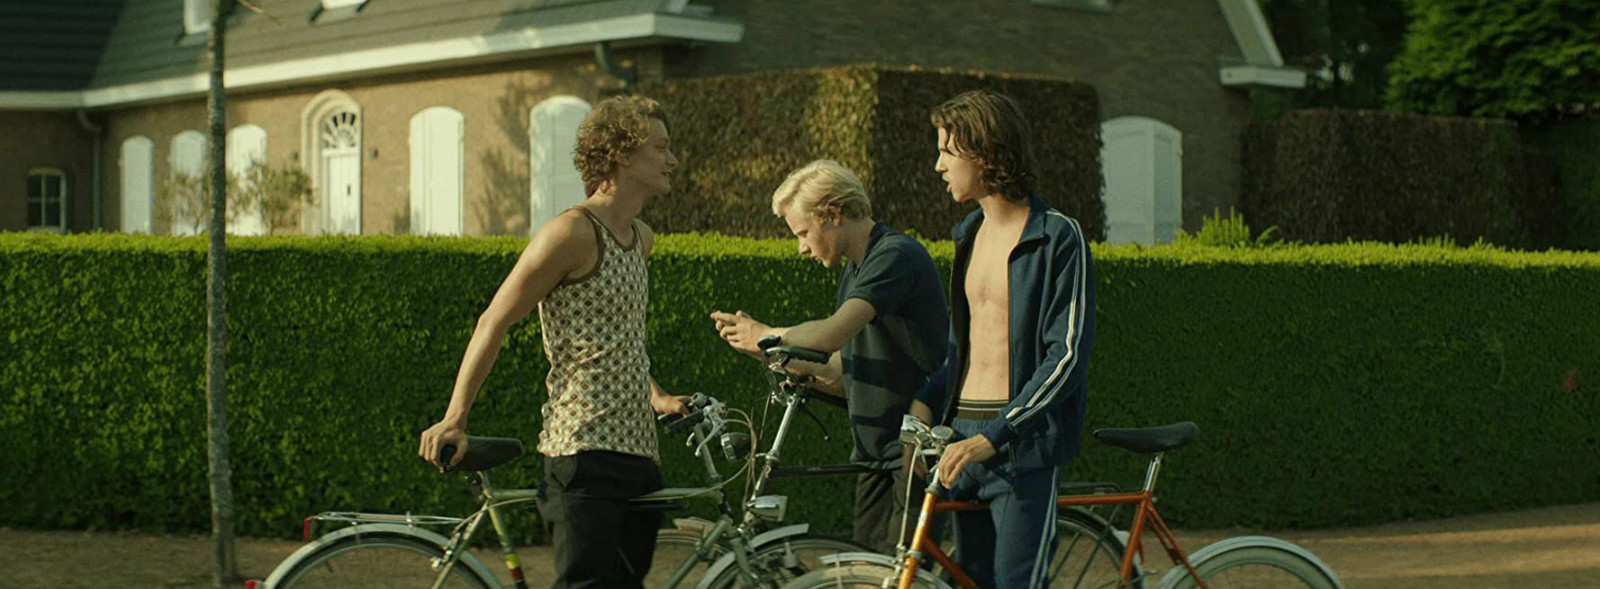 当我们在谈荷兰电影《放荡青春》时，我们其实在谈自己